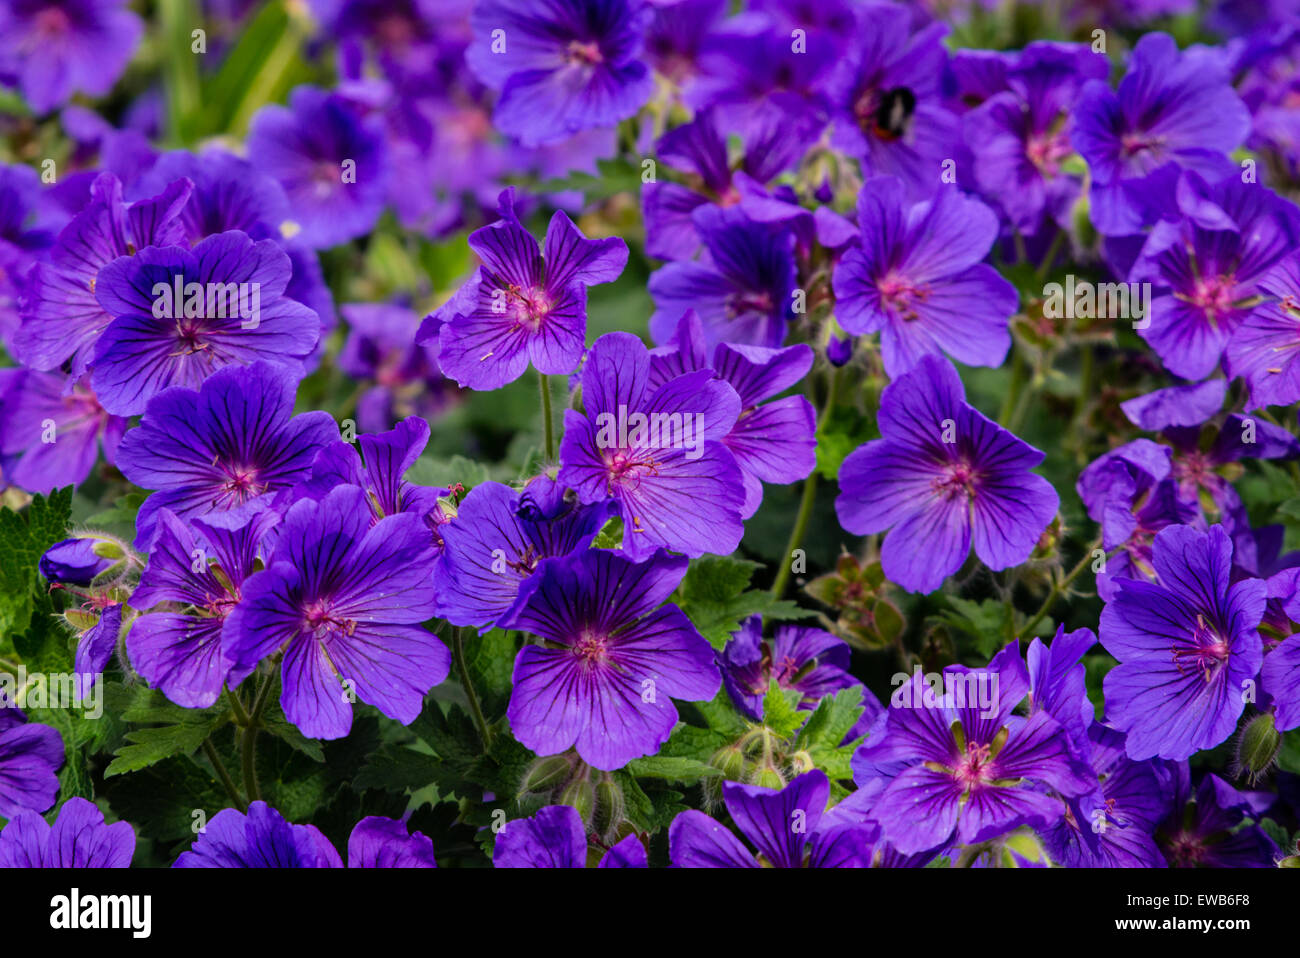 Wild geranium, geranium maculatum, flowers in a garden Stock Photo